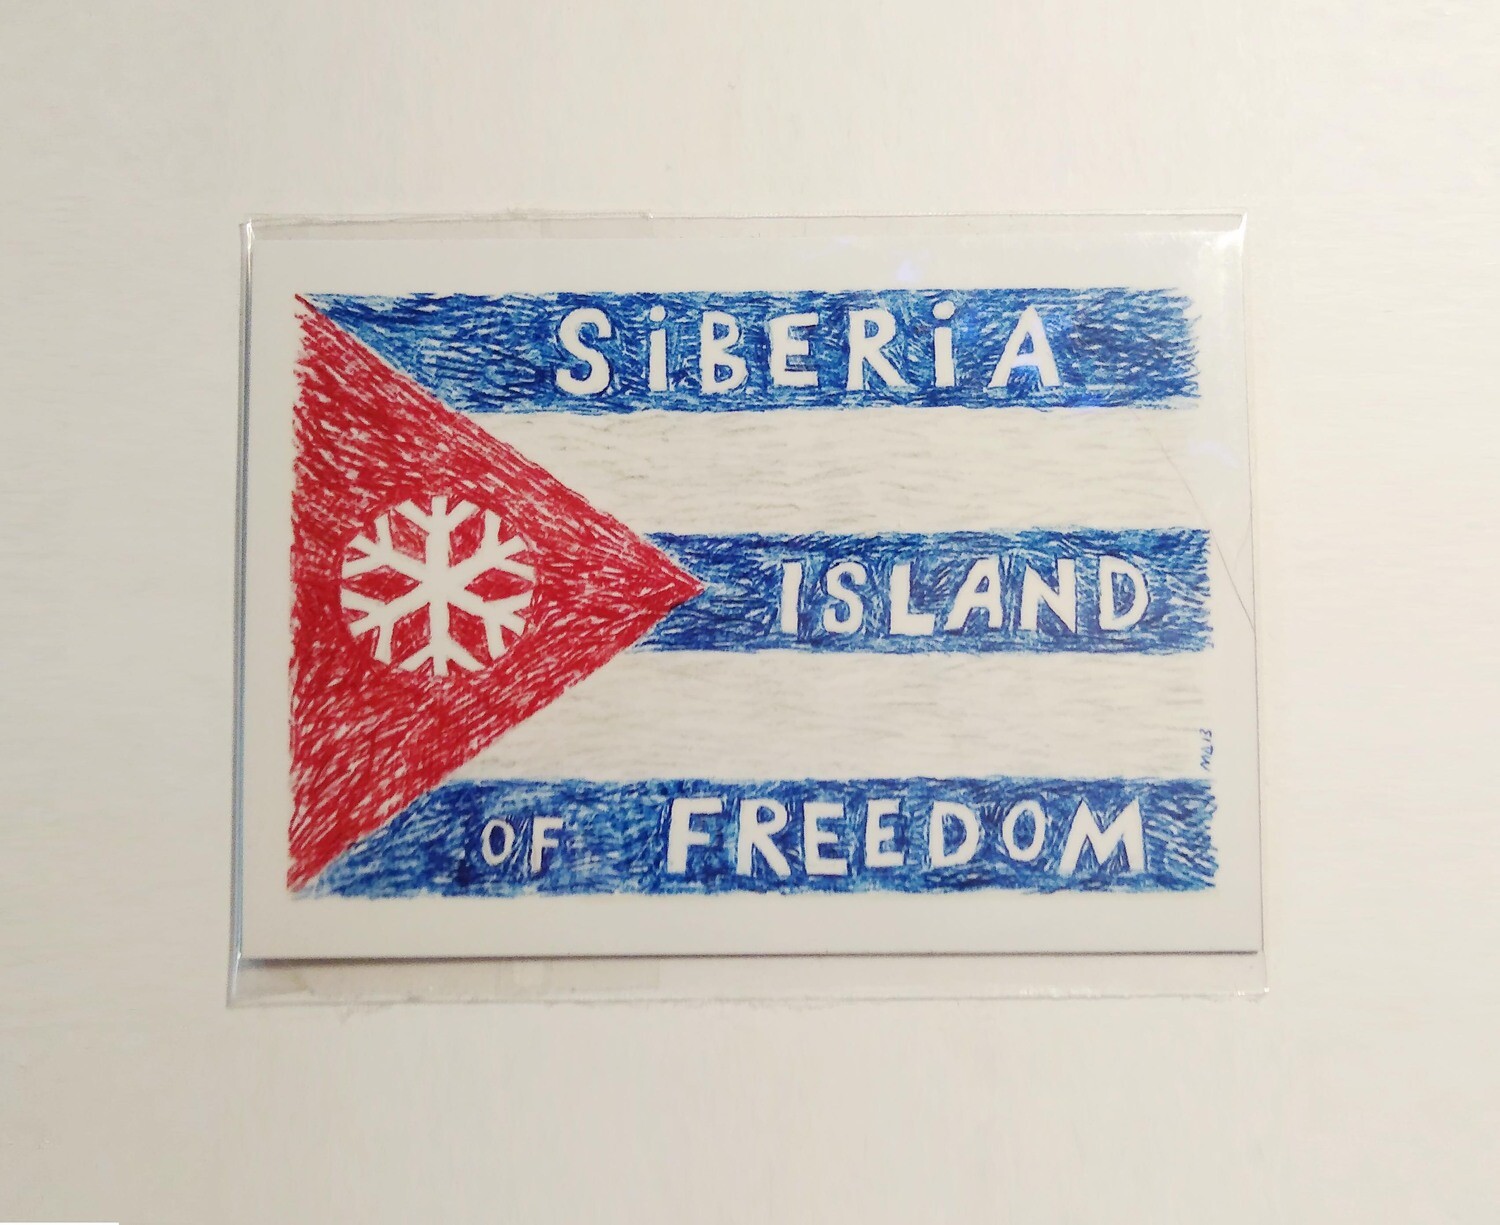 Магнит "Siberia Island of Freedom"